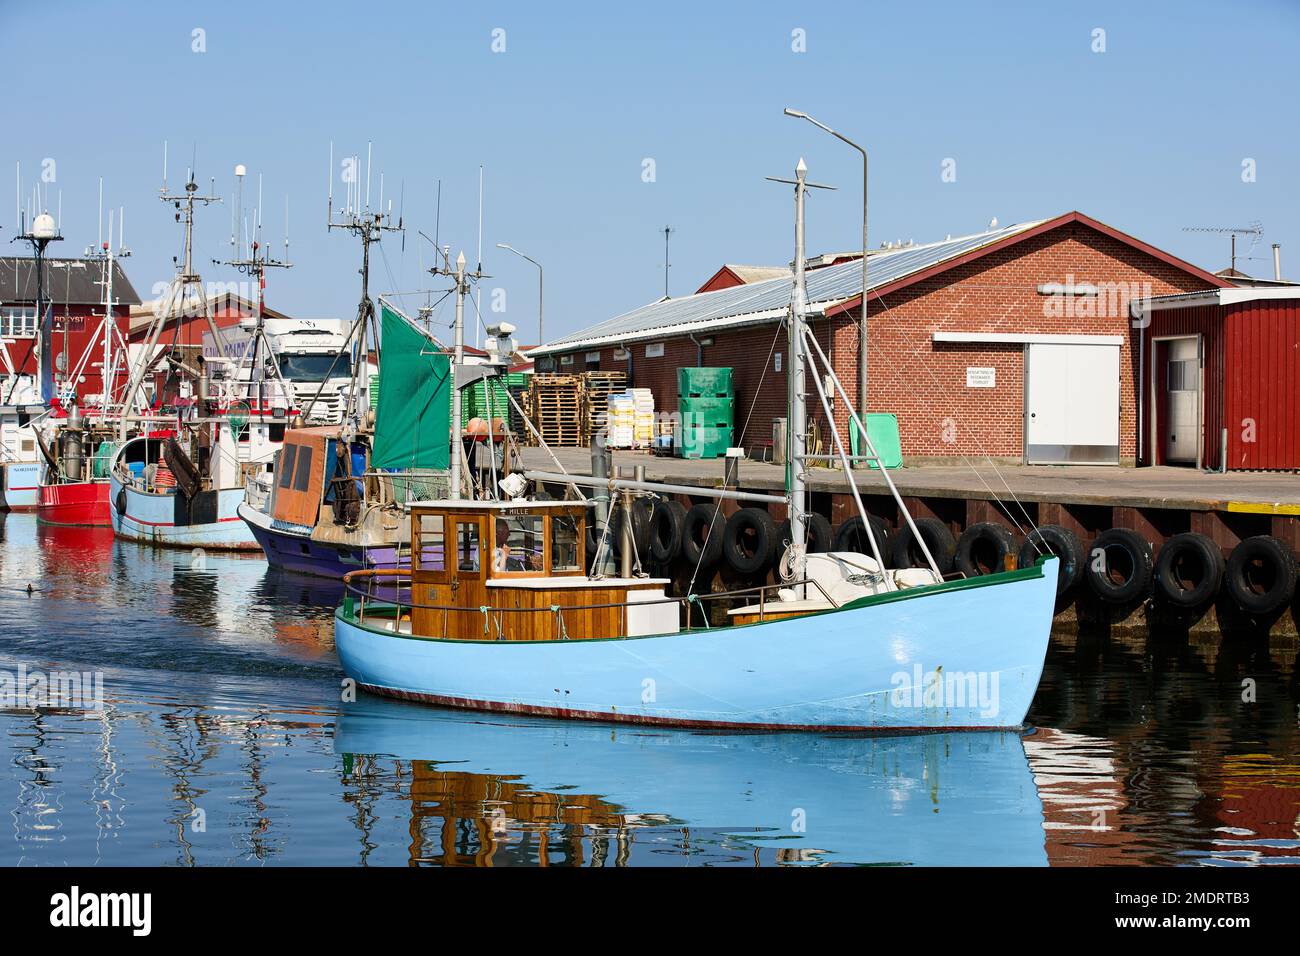 Fishing boat, Gilleleje Harbour; Gilleleje, Denmark Stock Photo